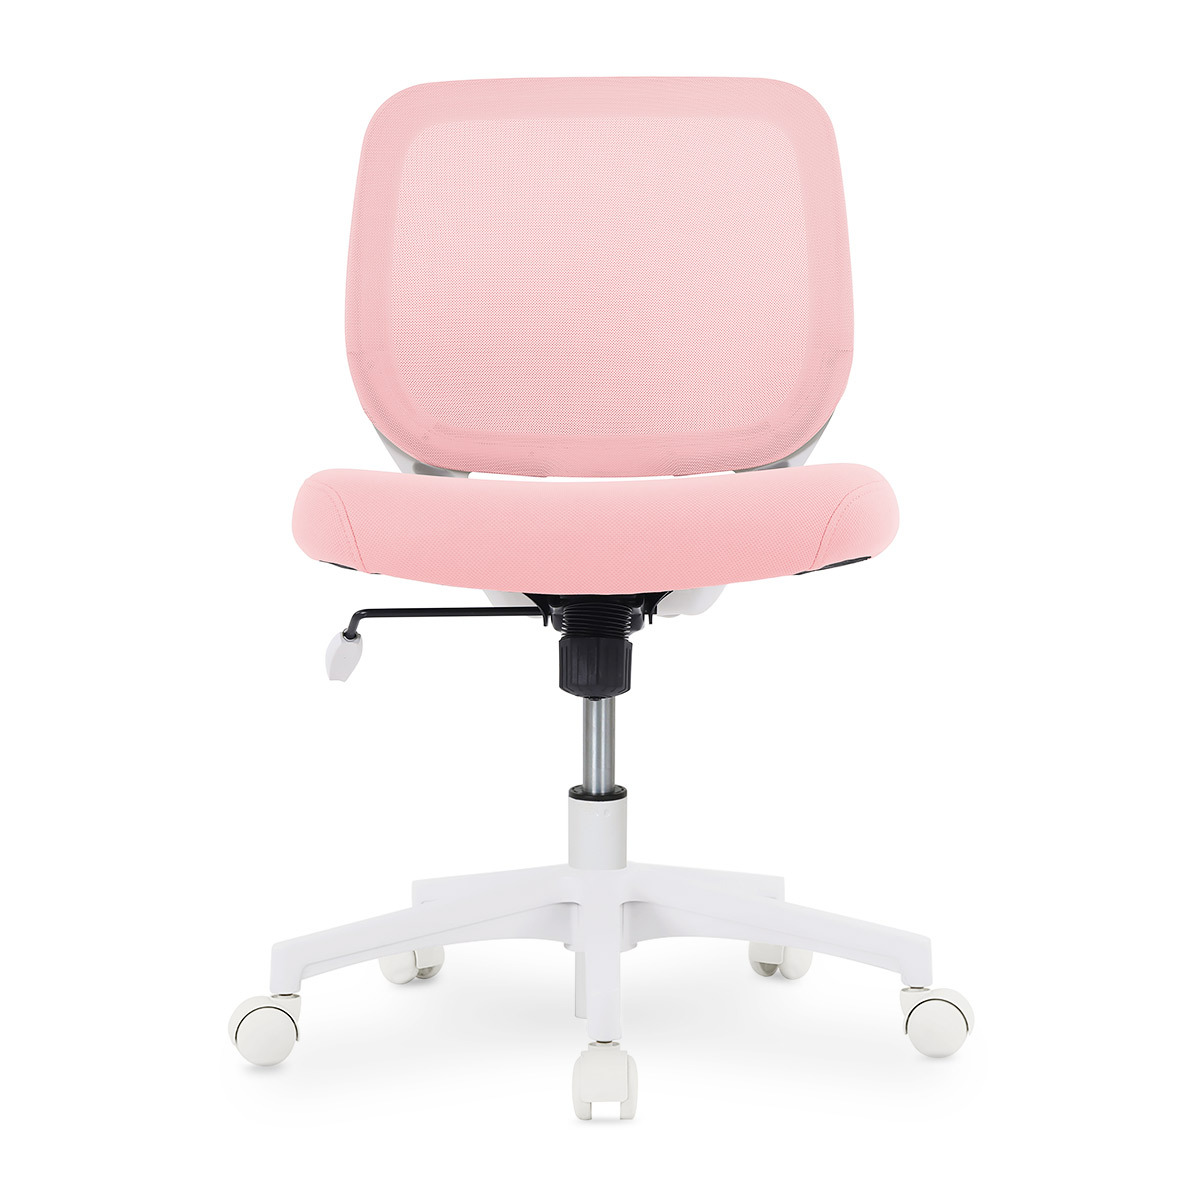 Comprar Respaldo para silla de oficina al mejor precio online